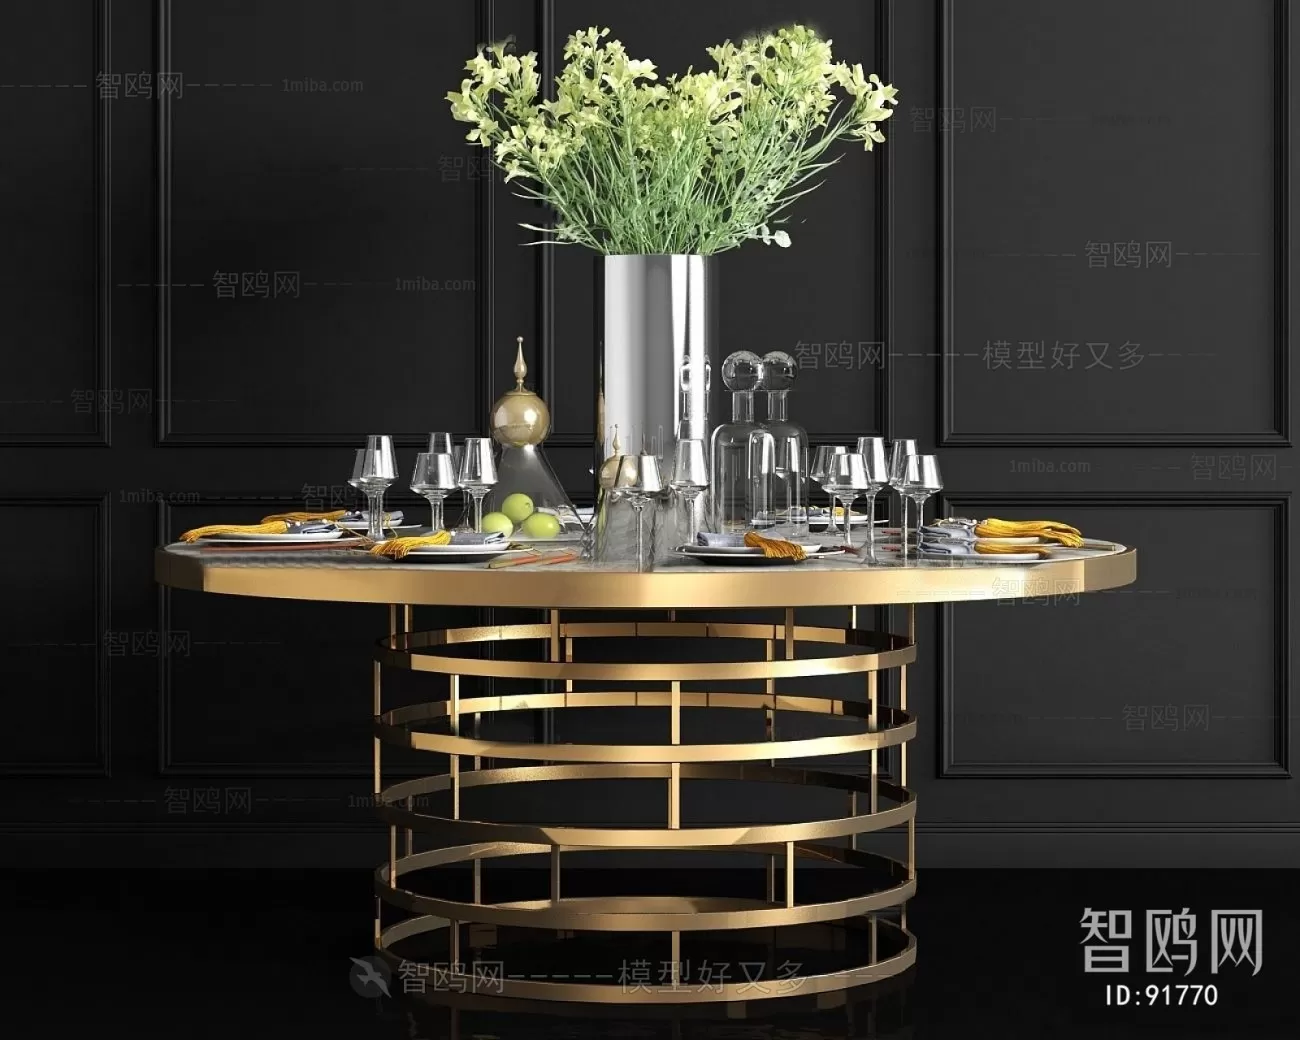 TEA TABLES 3D MODELS – 212 – PRO